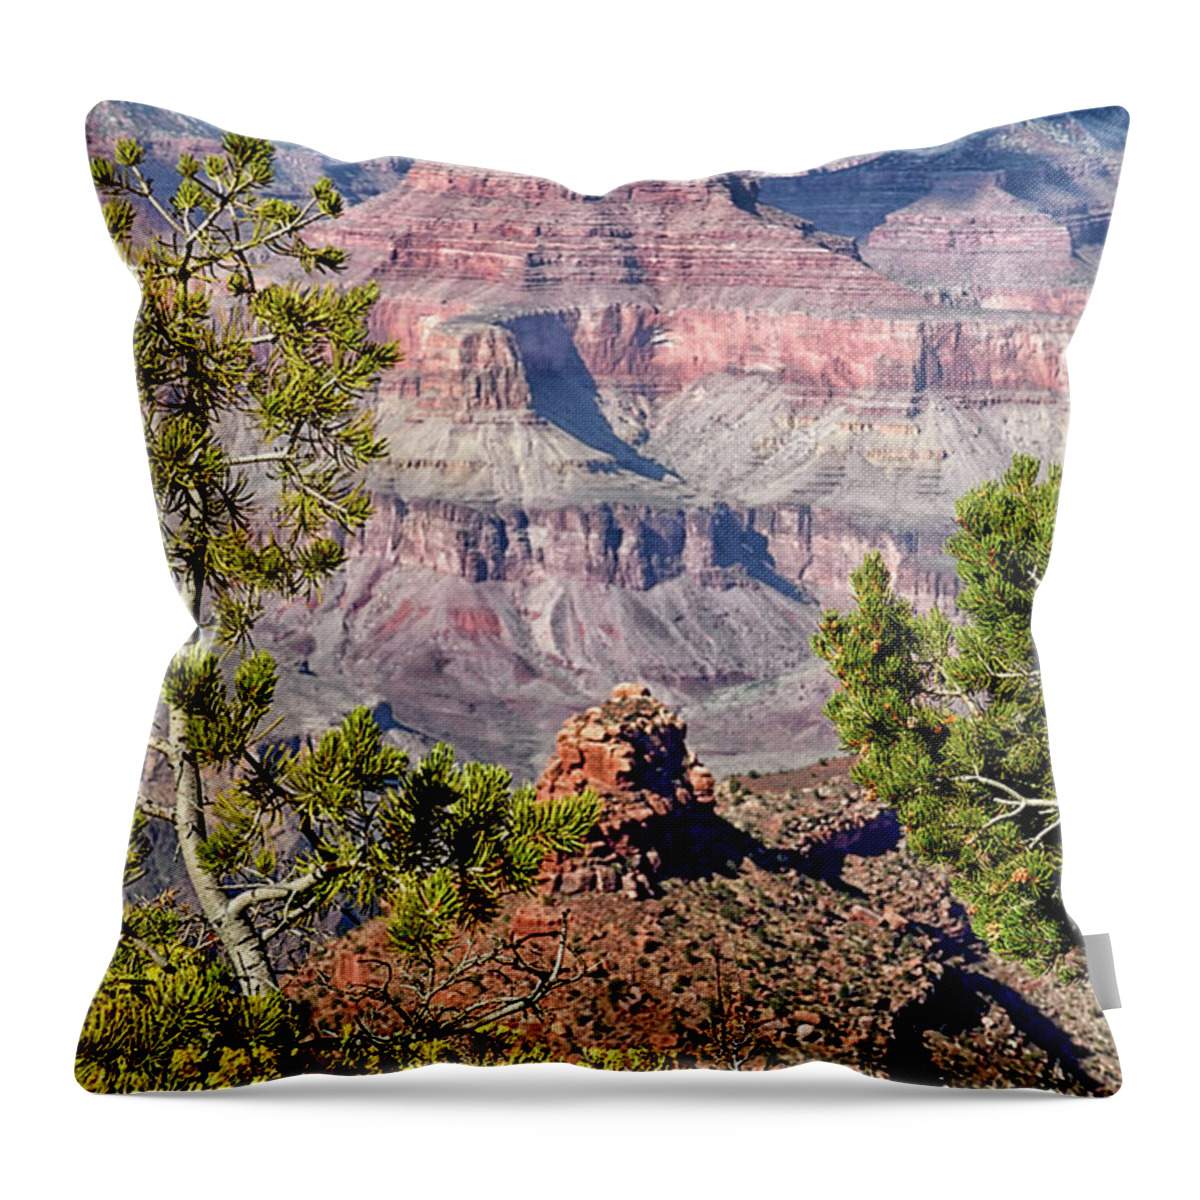 Top Artist Throw Pillow featuring the photograph Grand Canyon Vista by Norman Gabitzsch